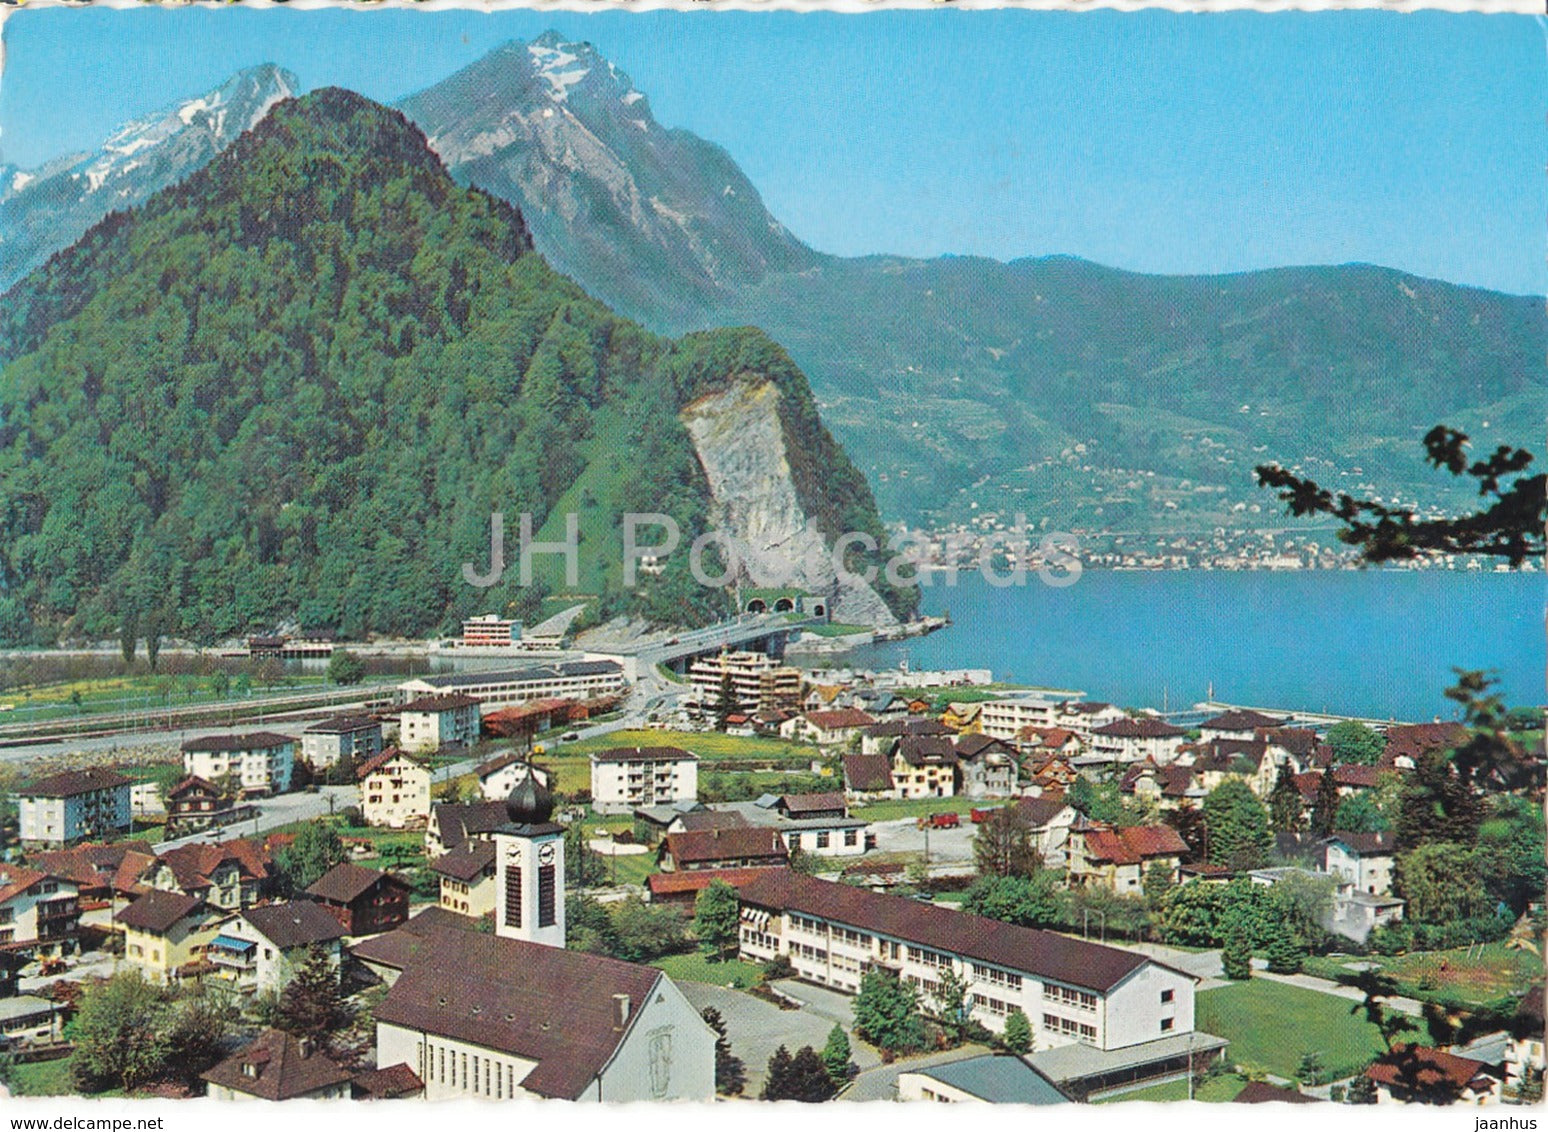 Stansstad mit Pilatus - Vierwaldstattersee - lake - 6927 - Switzerland - 1967 - used - JH Postcards